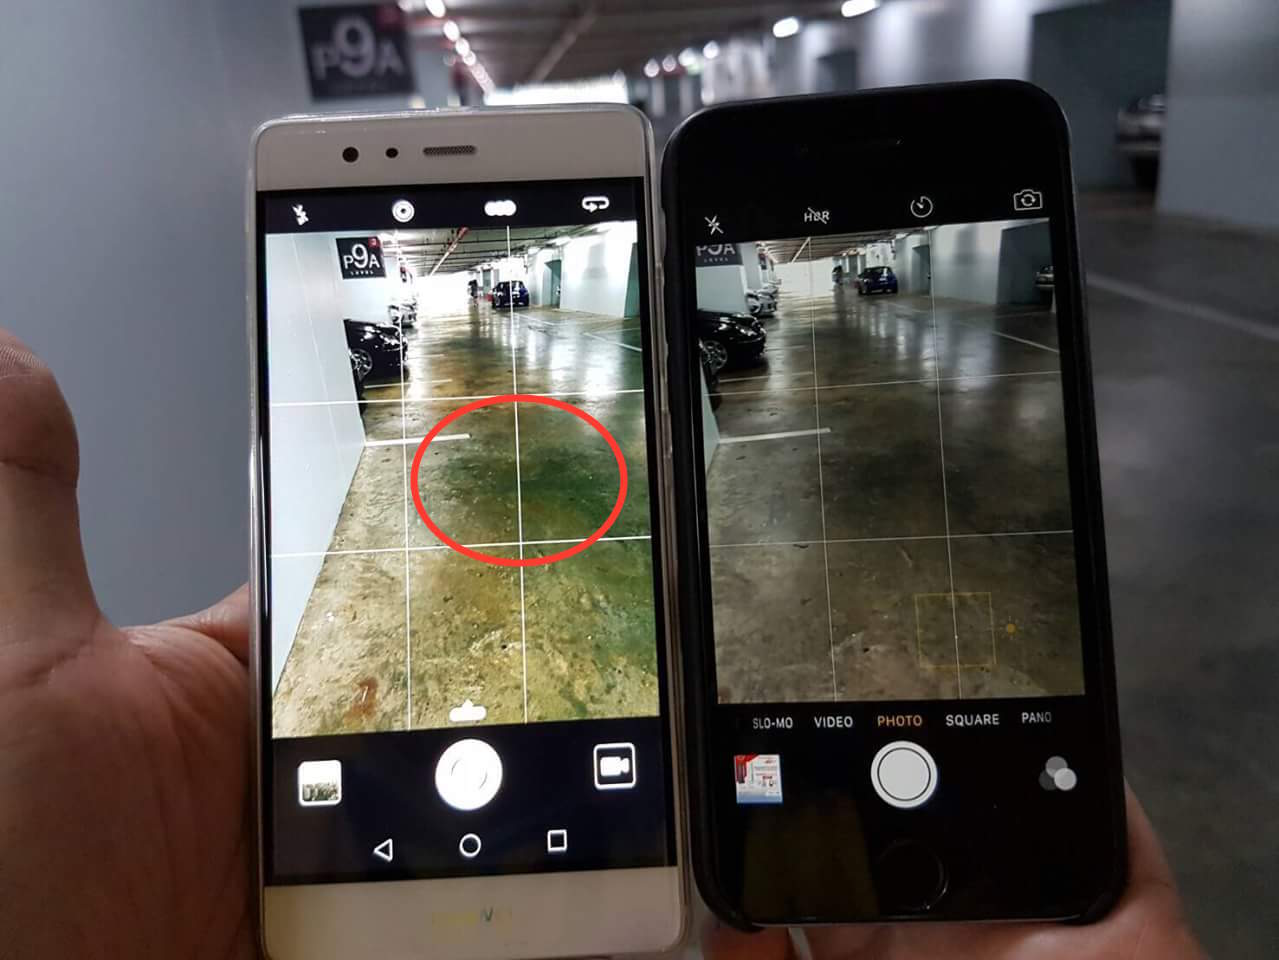 ซื้อ Huawei P9 อย่ามัวแต่ถ่ายกล้องขาวดำ ระวังเจอกล้องเขียวด้วย!!